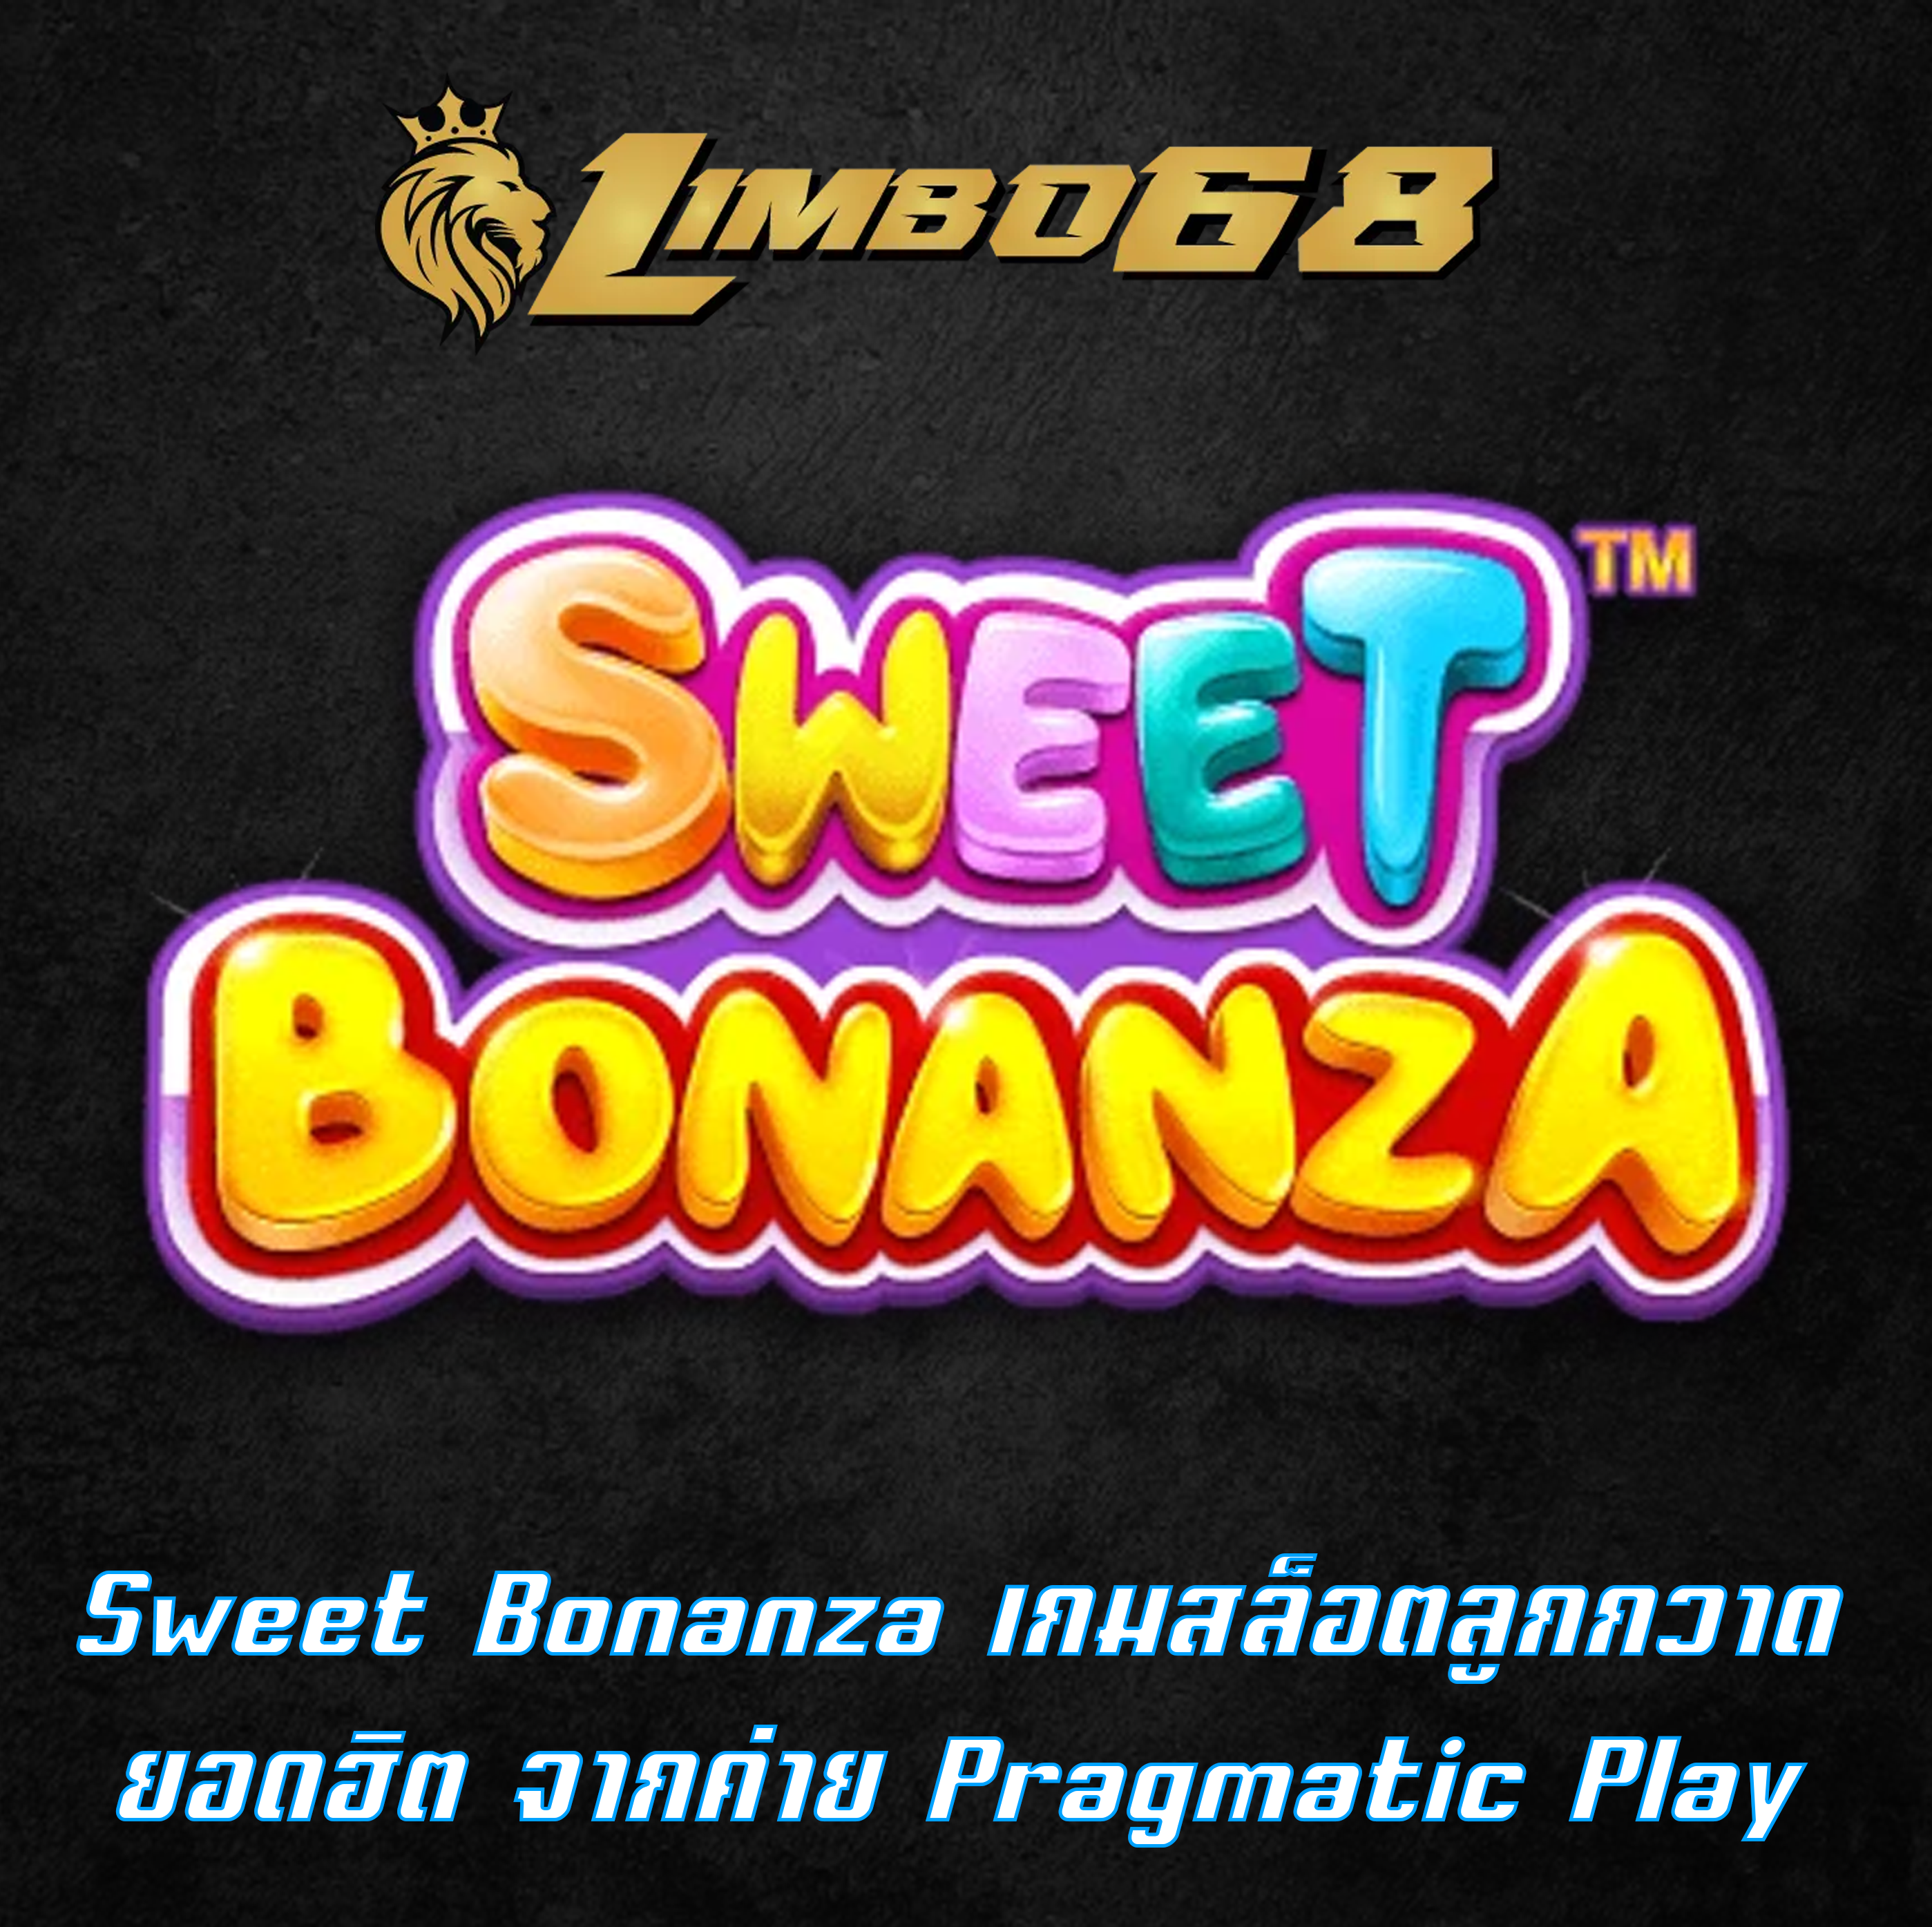 Sweet Bonanza เกมสล็อตลูกกวาดยอดฮิต จากค่าย Pragmatic Play